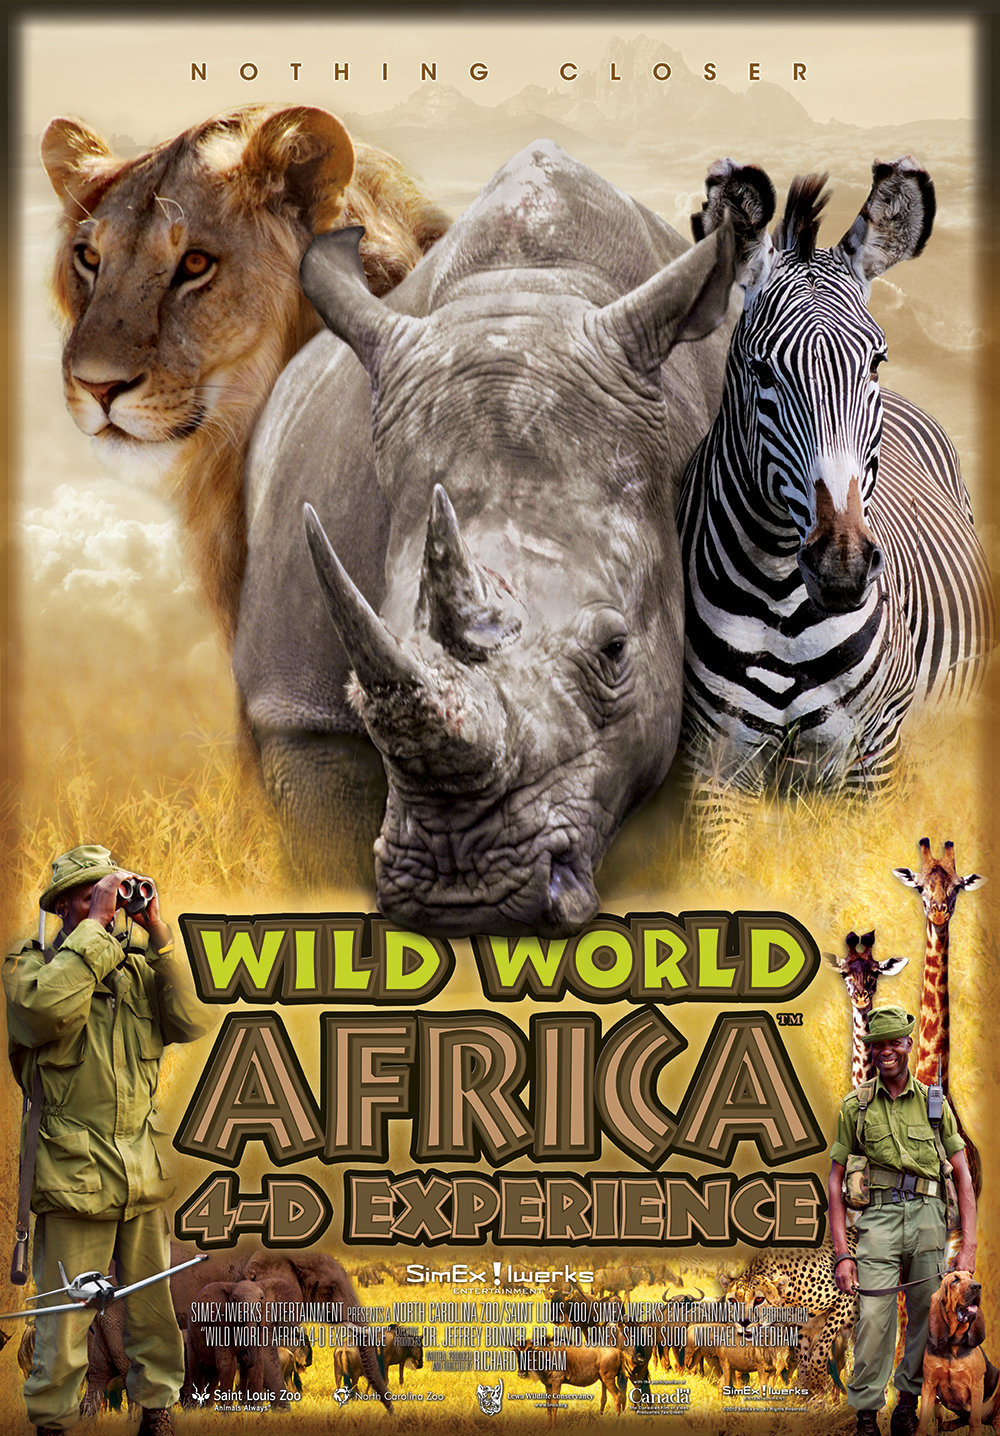 Wild World Africa 3-D